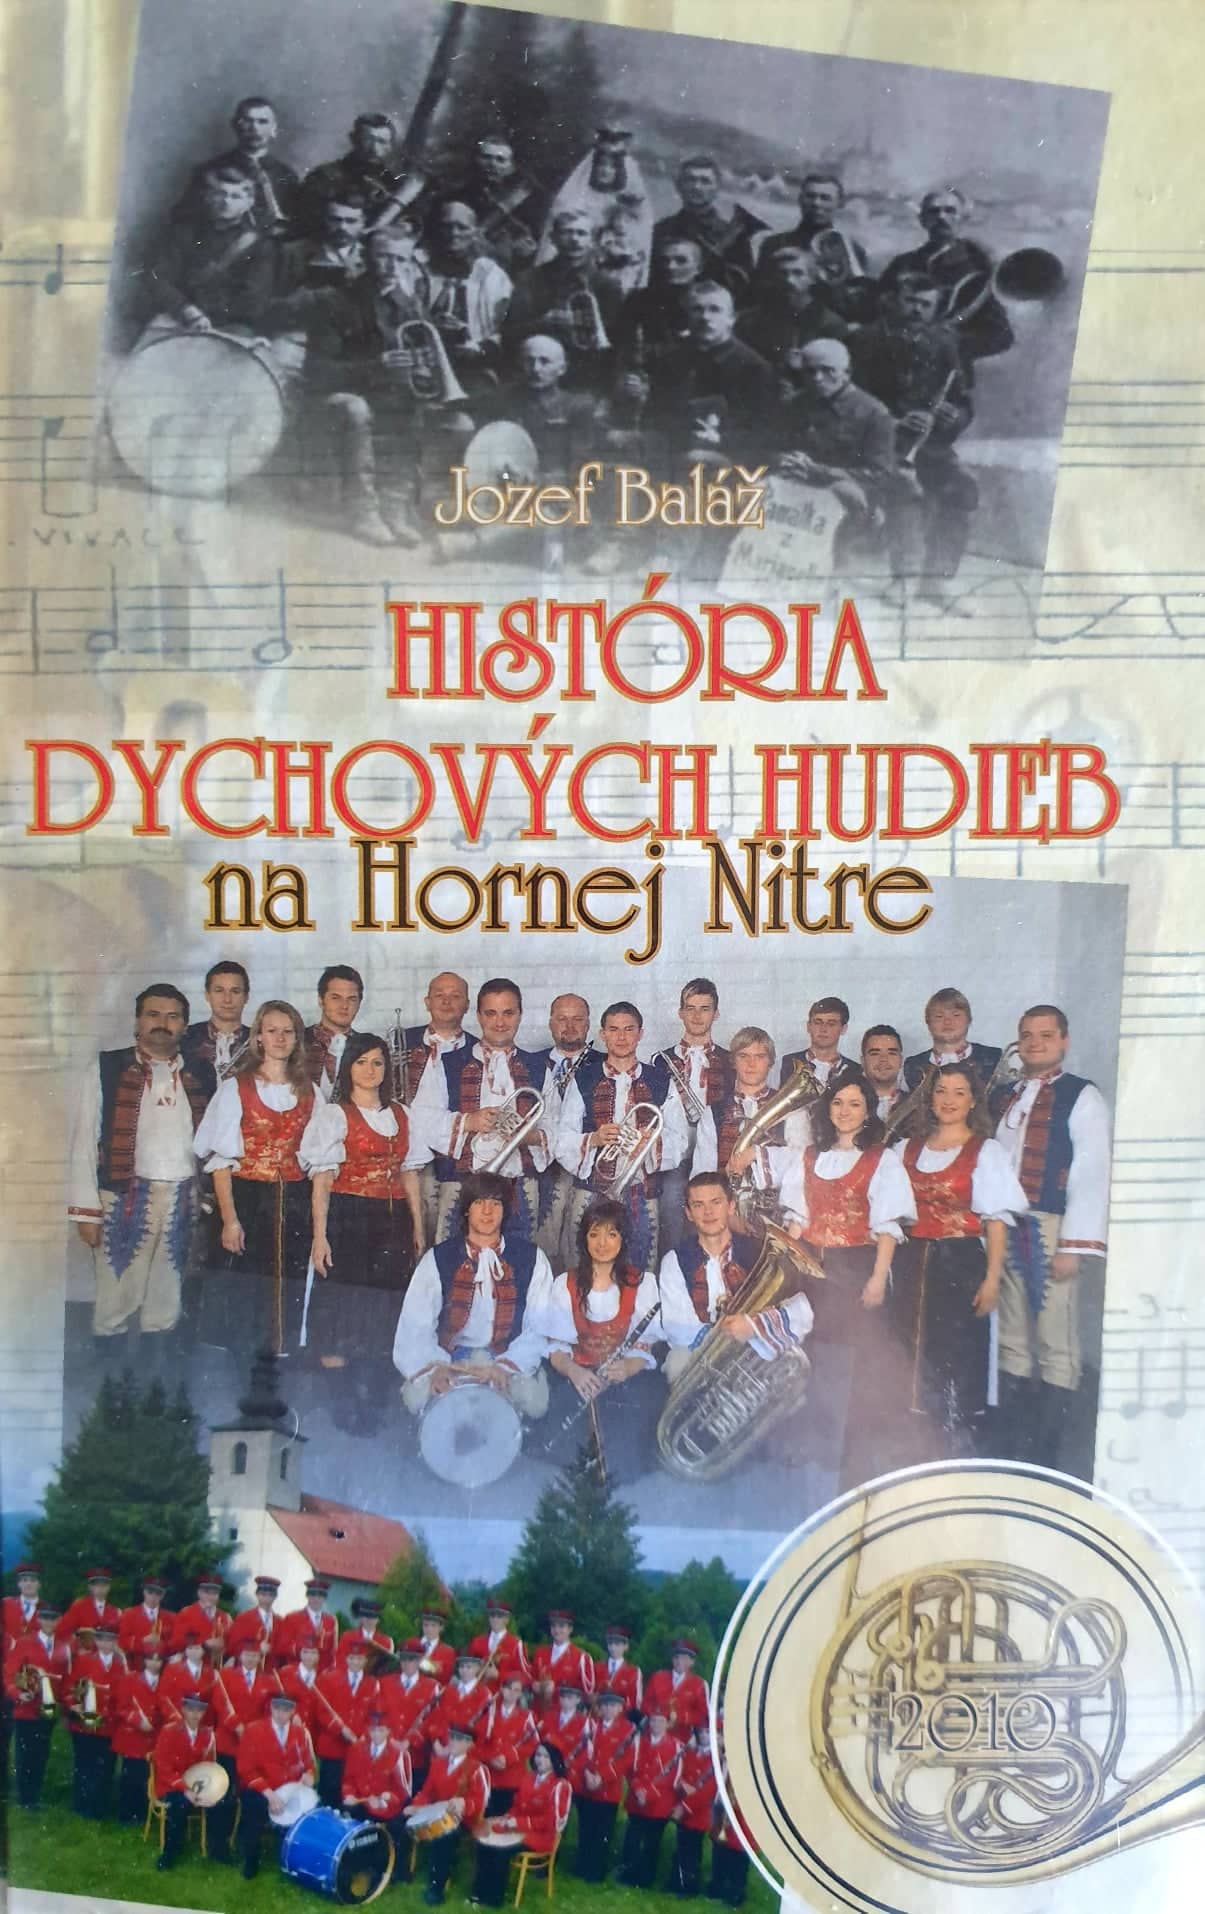 kniha "História dychových hudieb na Hornej Nitre" od Jozefa Baláža